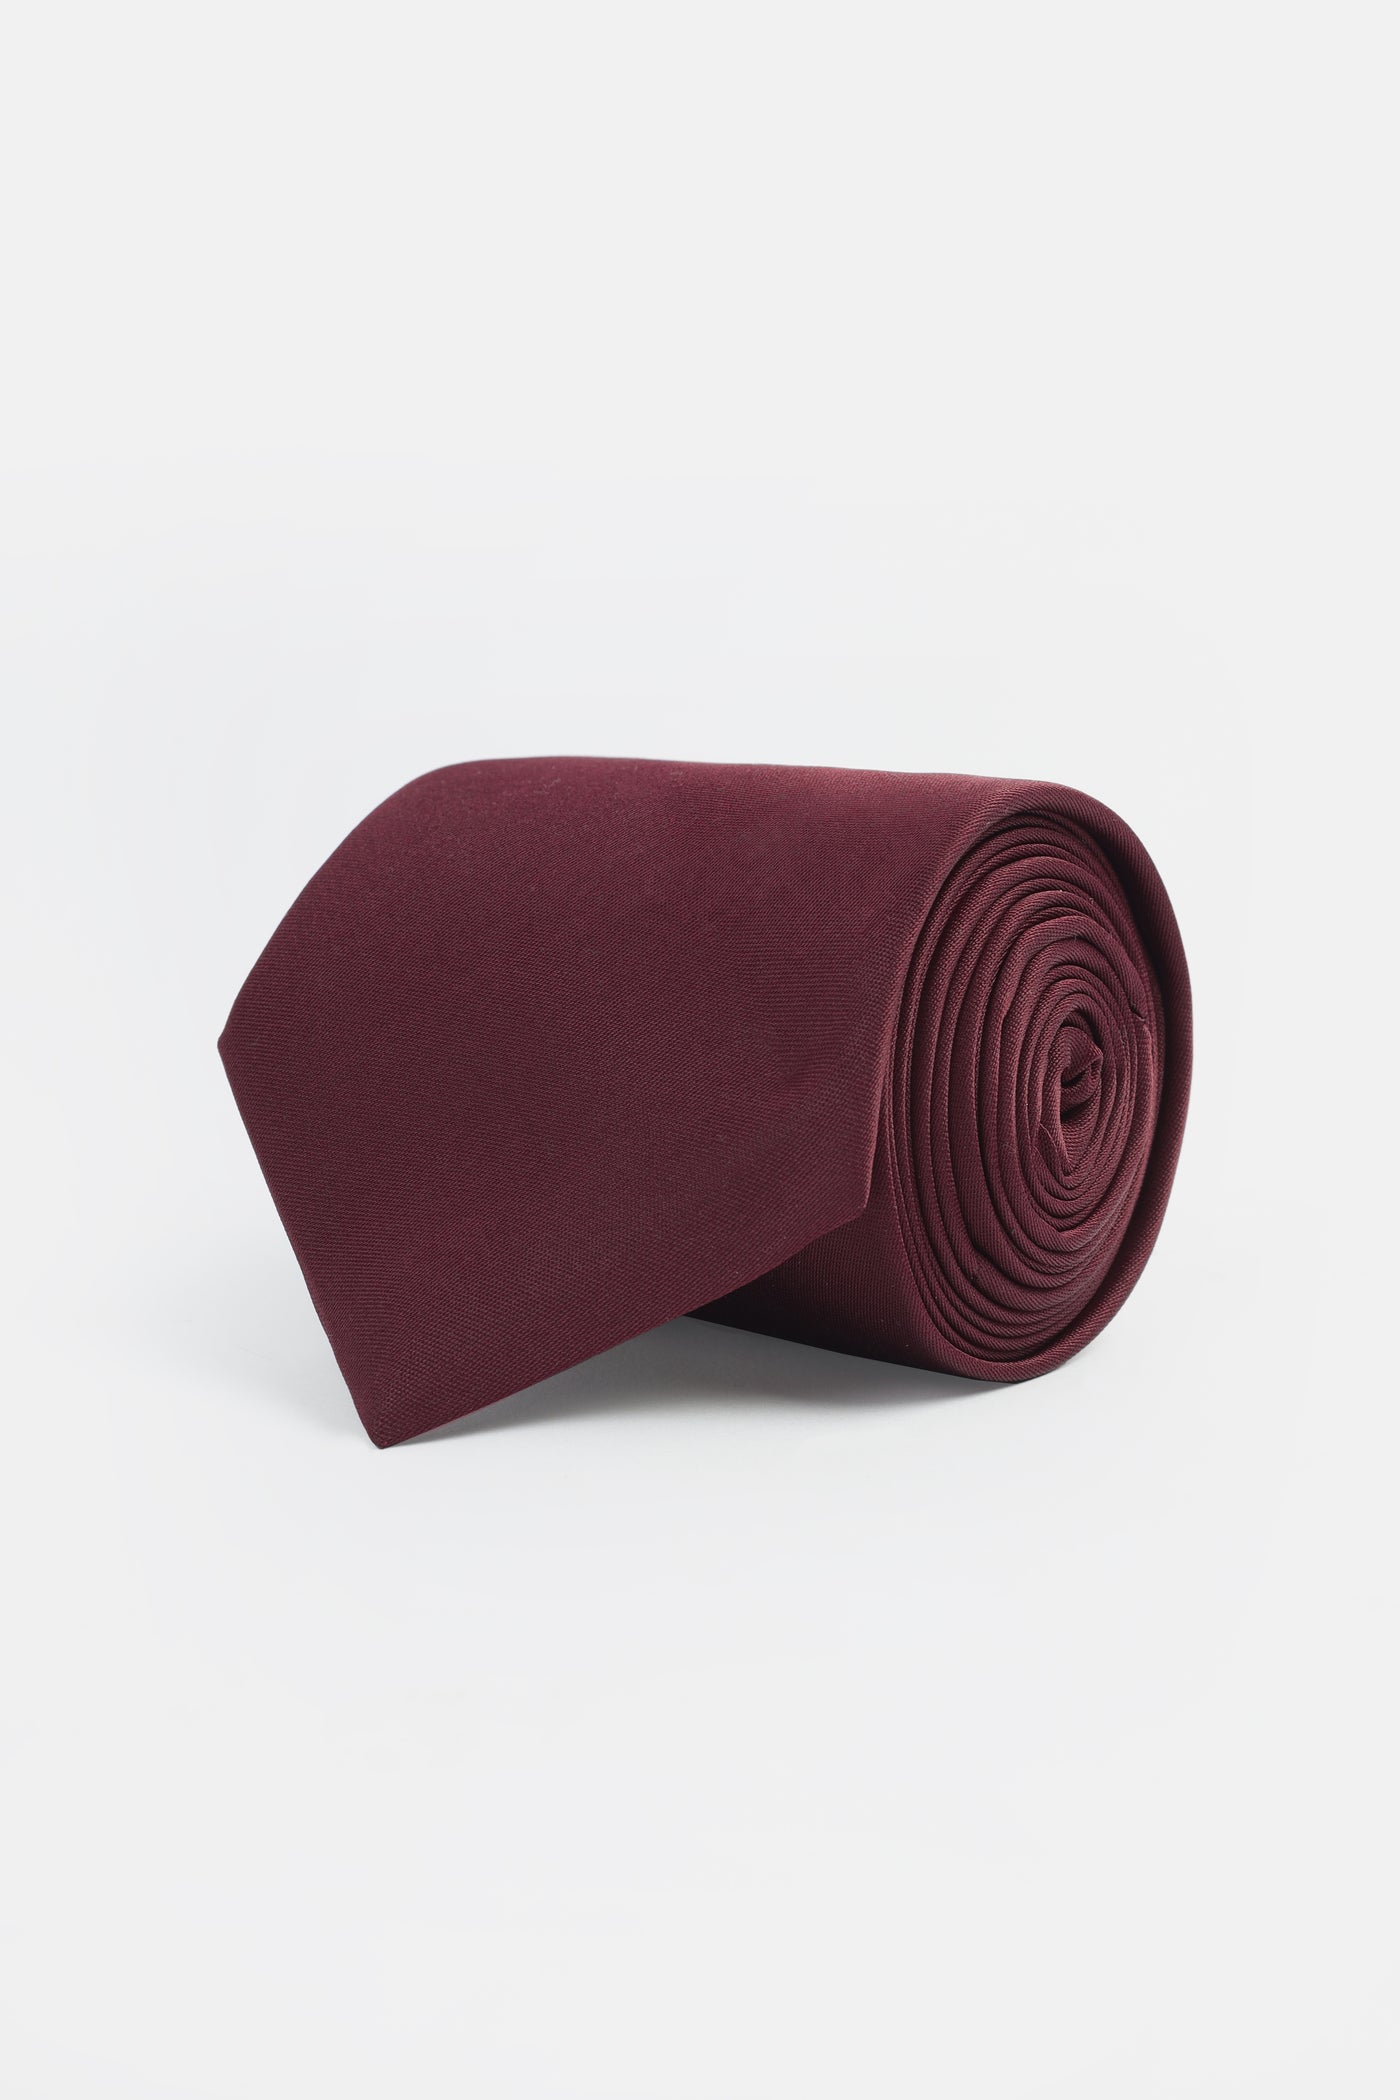 Solid Wine Red Necktie Handkerchief